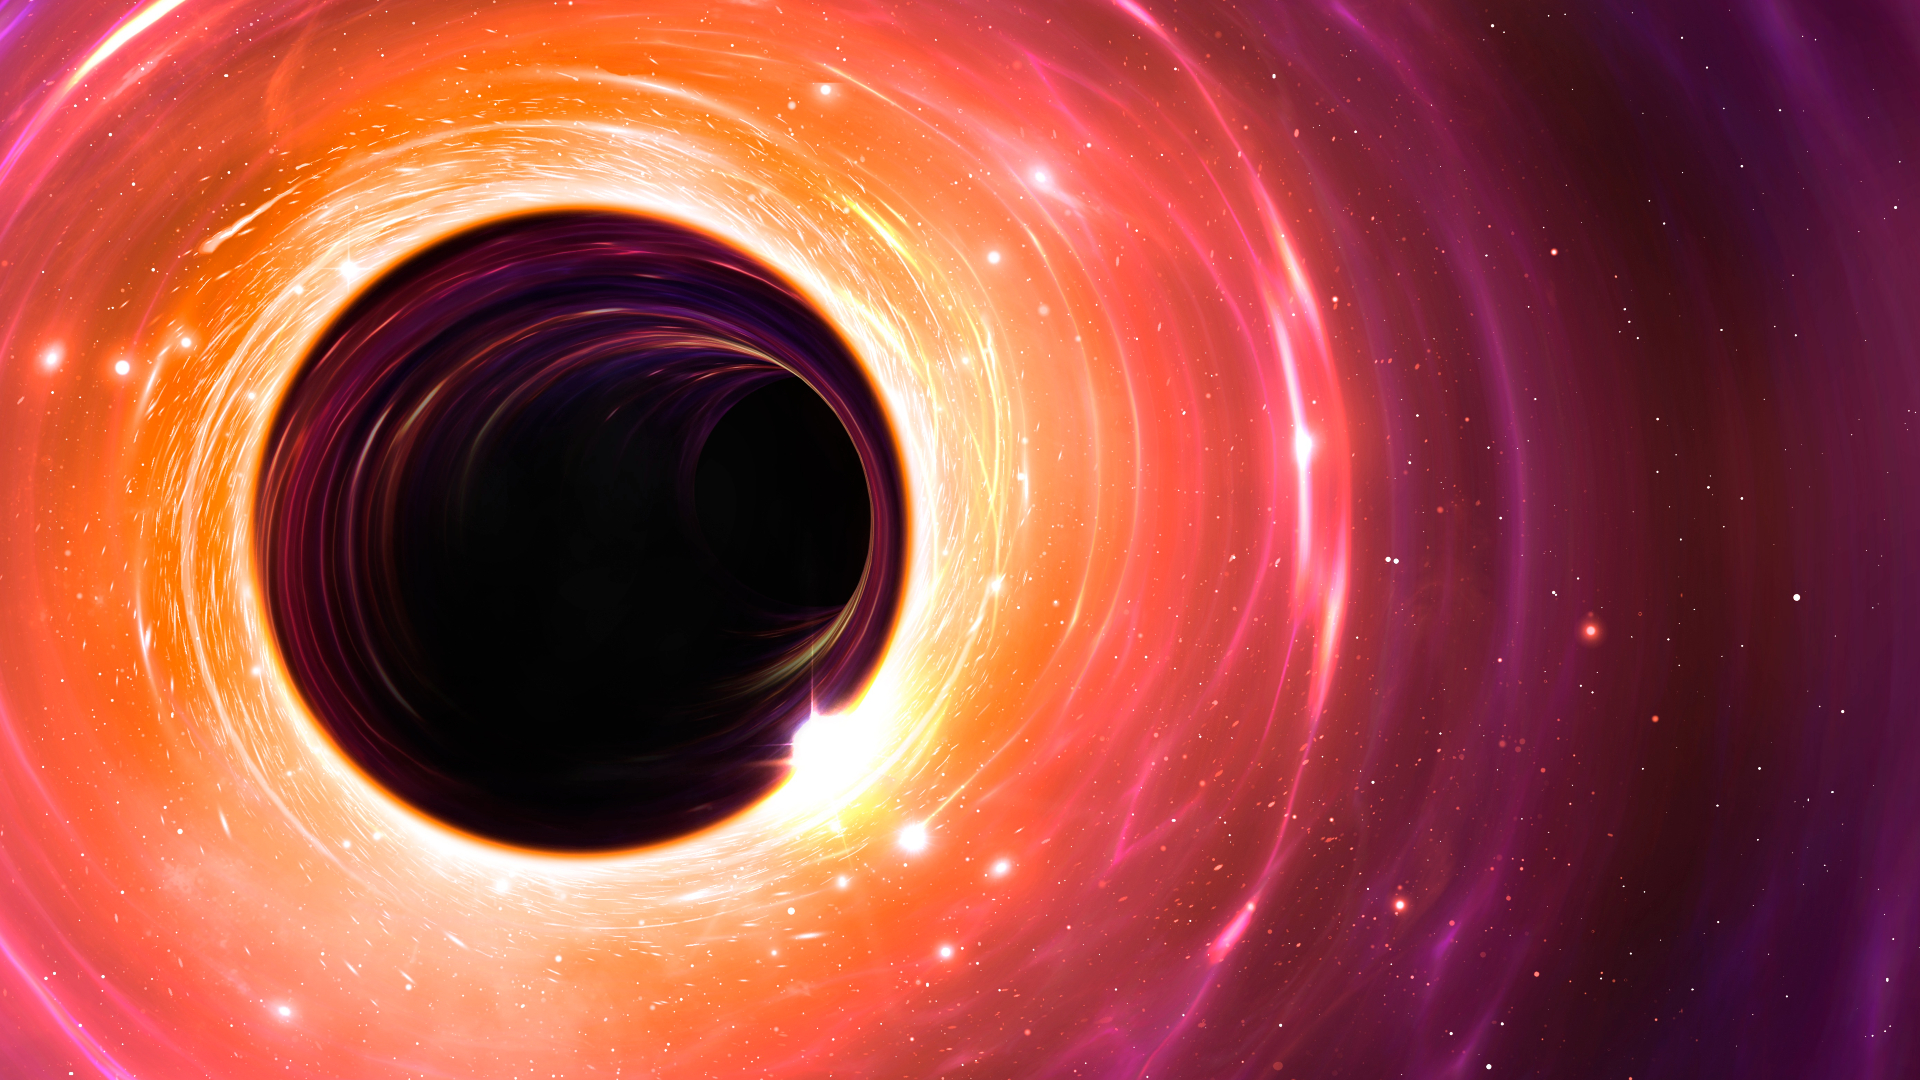 Could a black hole devour the universe?